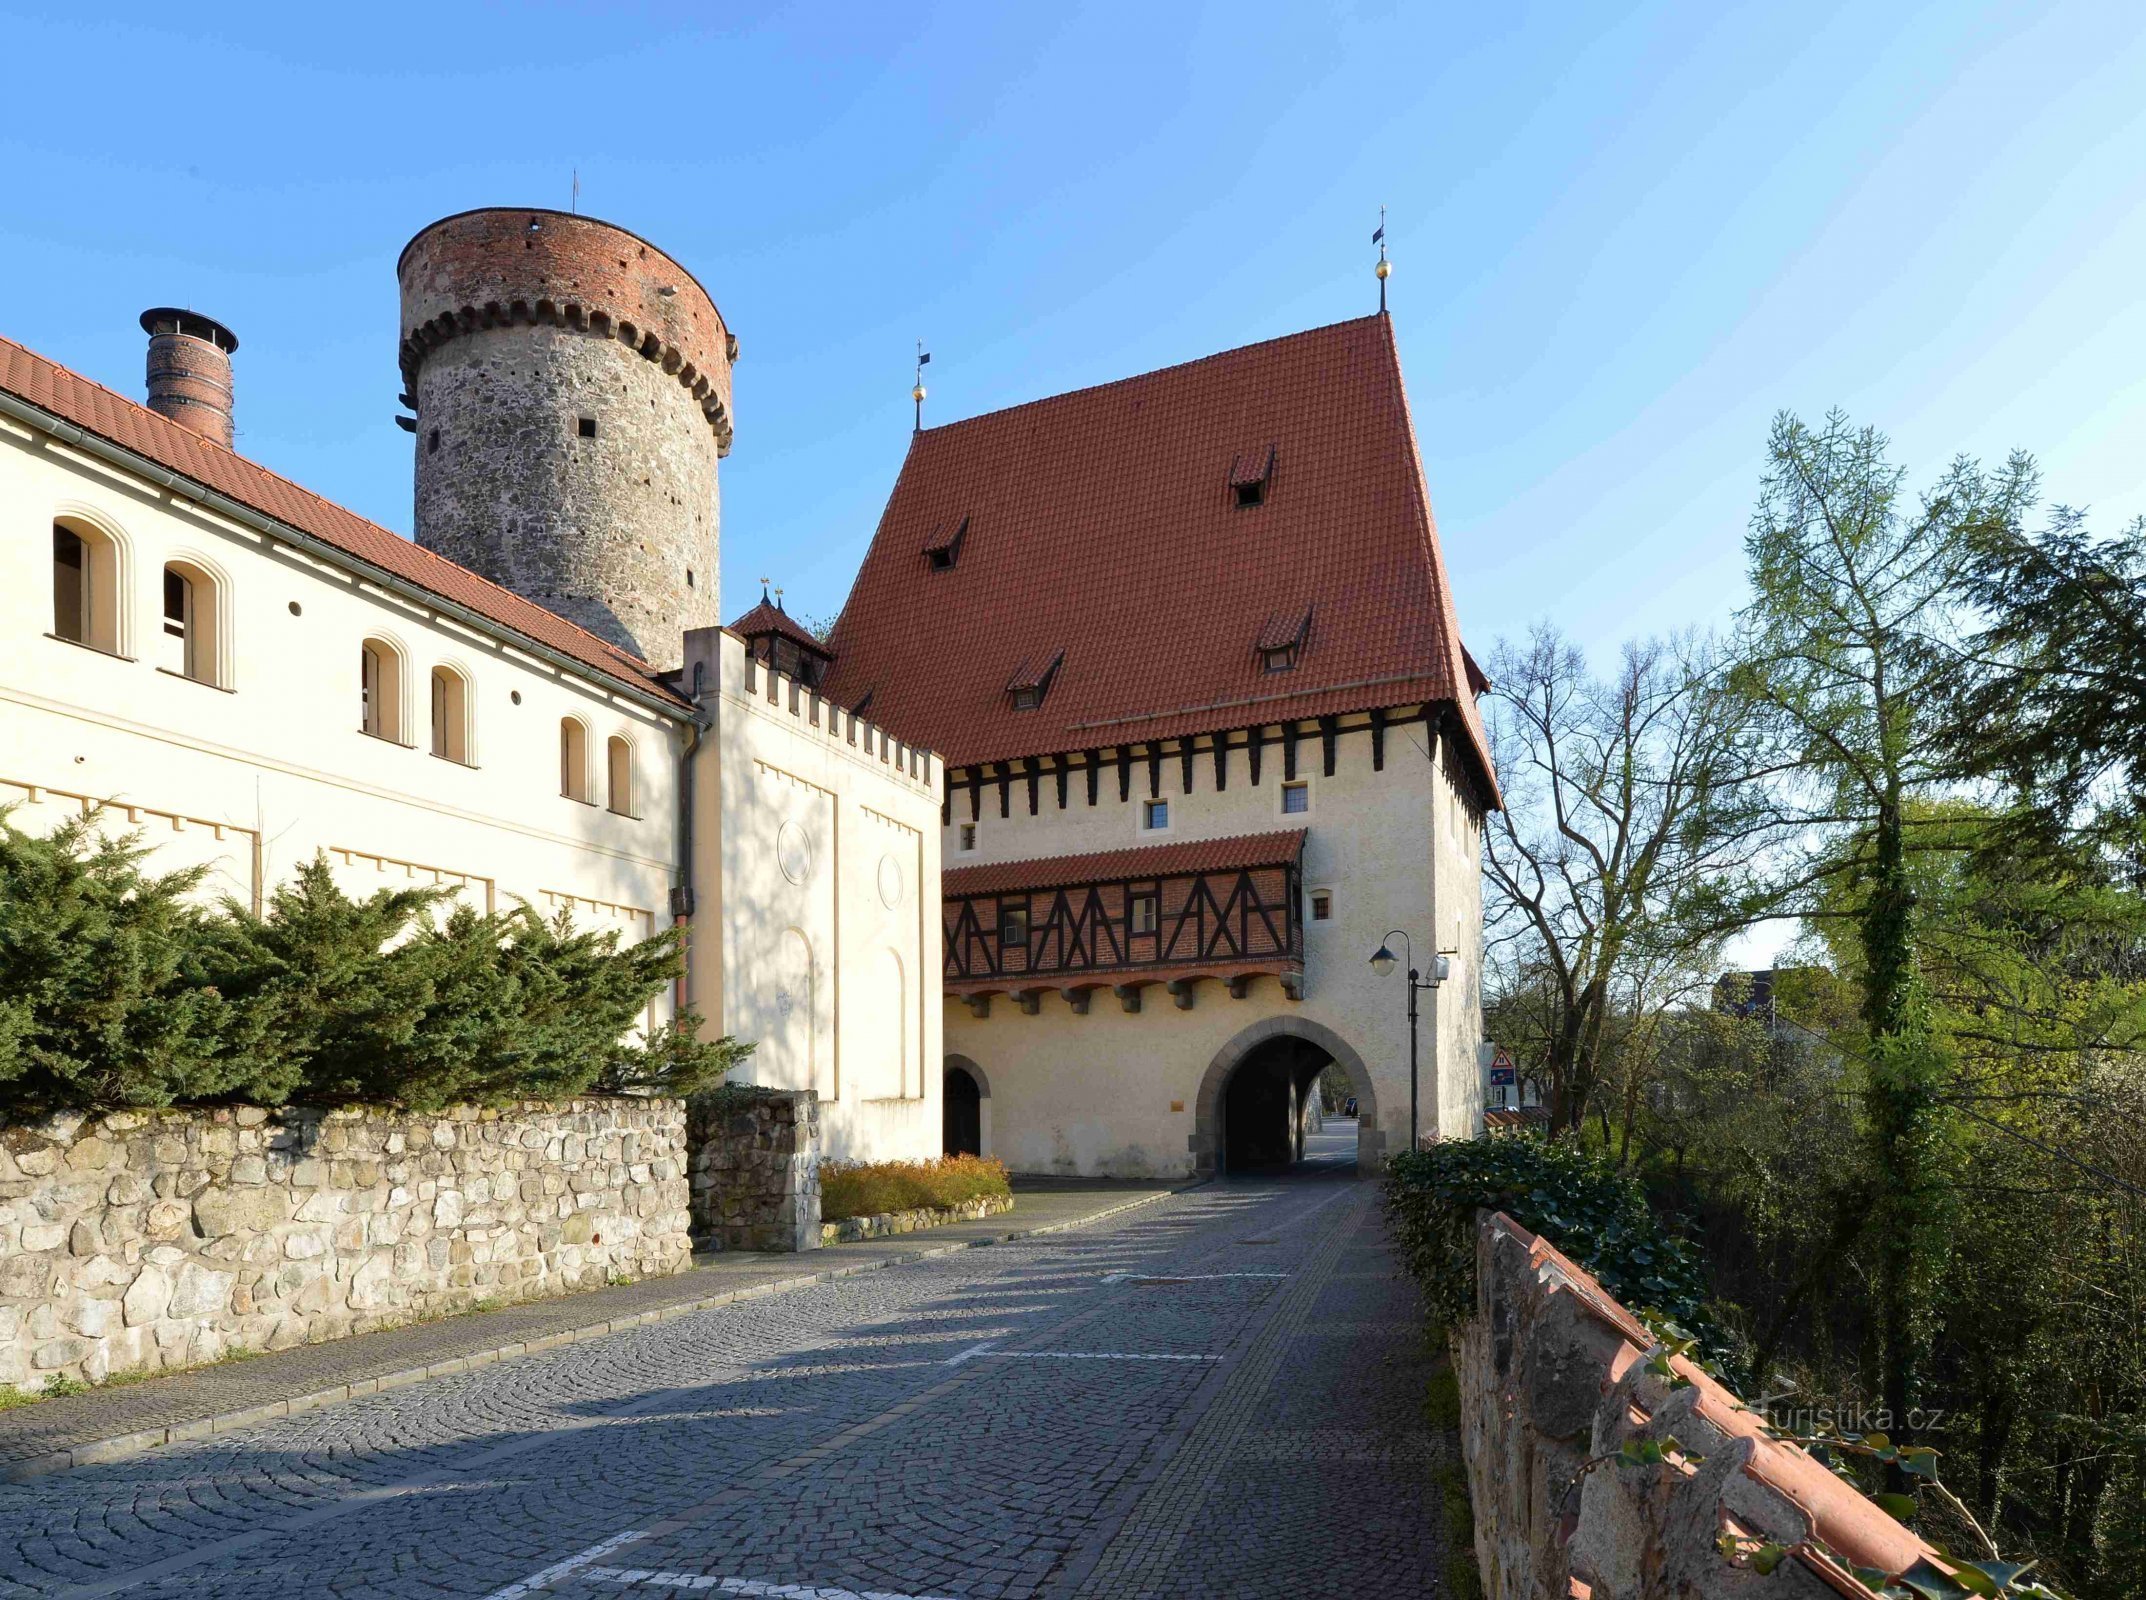 A Kotnov-torony és a Bechyňská-kapu - Tábor egyik legrégebbi műemléke